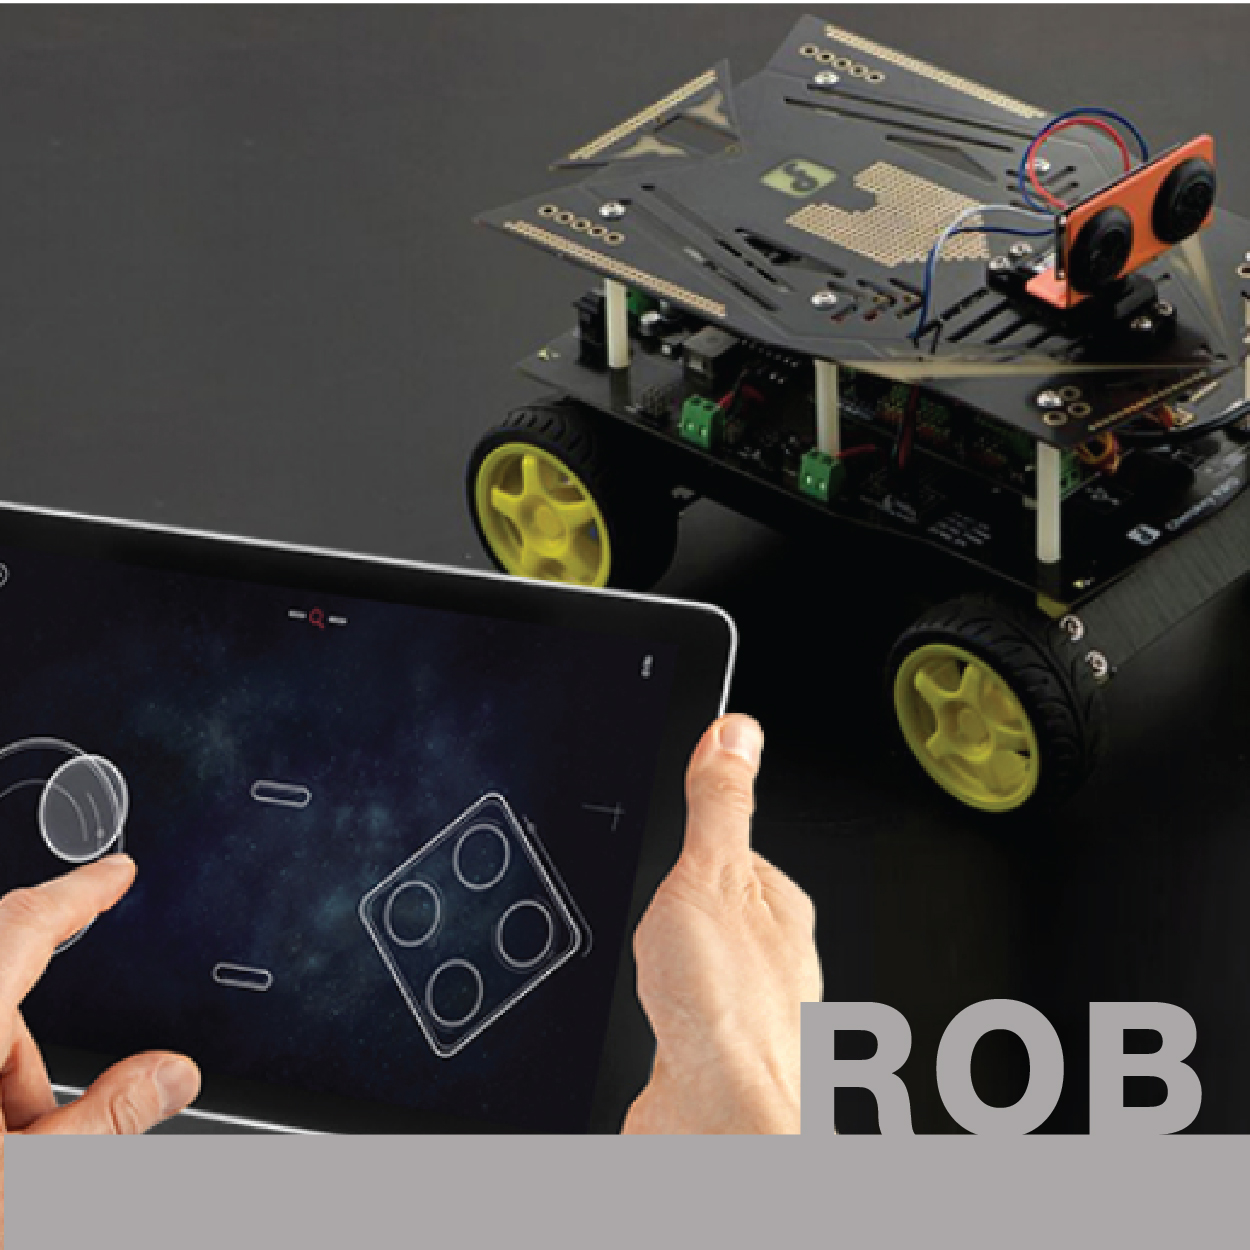 ROB - ช่างหุ่นยนต์เบื้องต้น